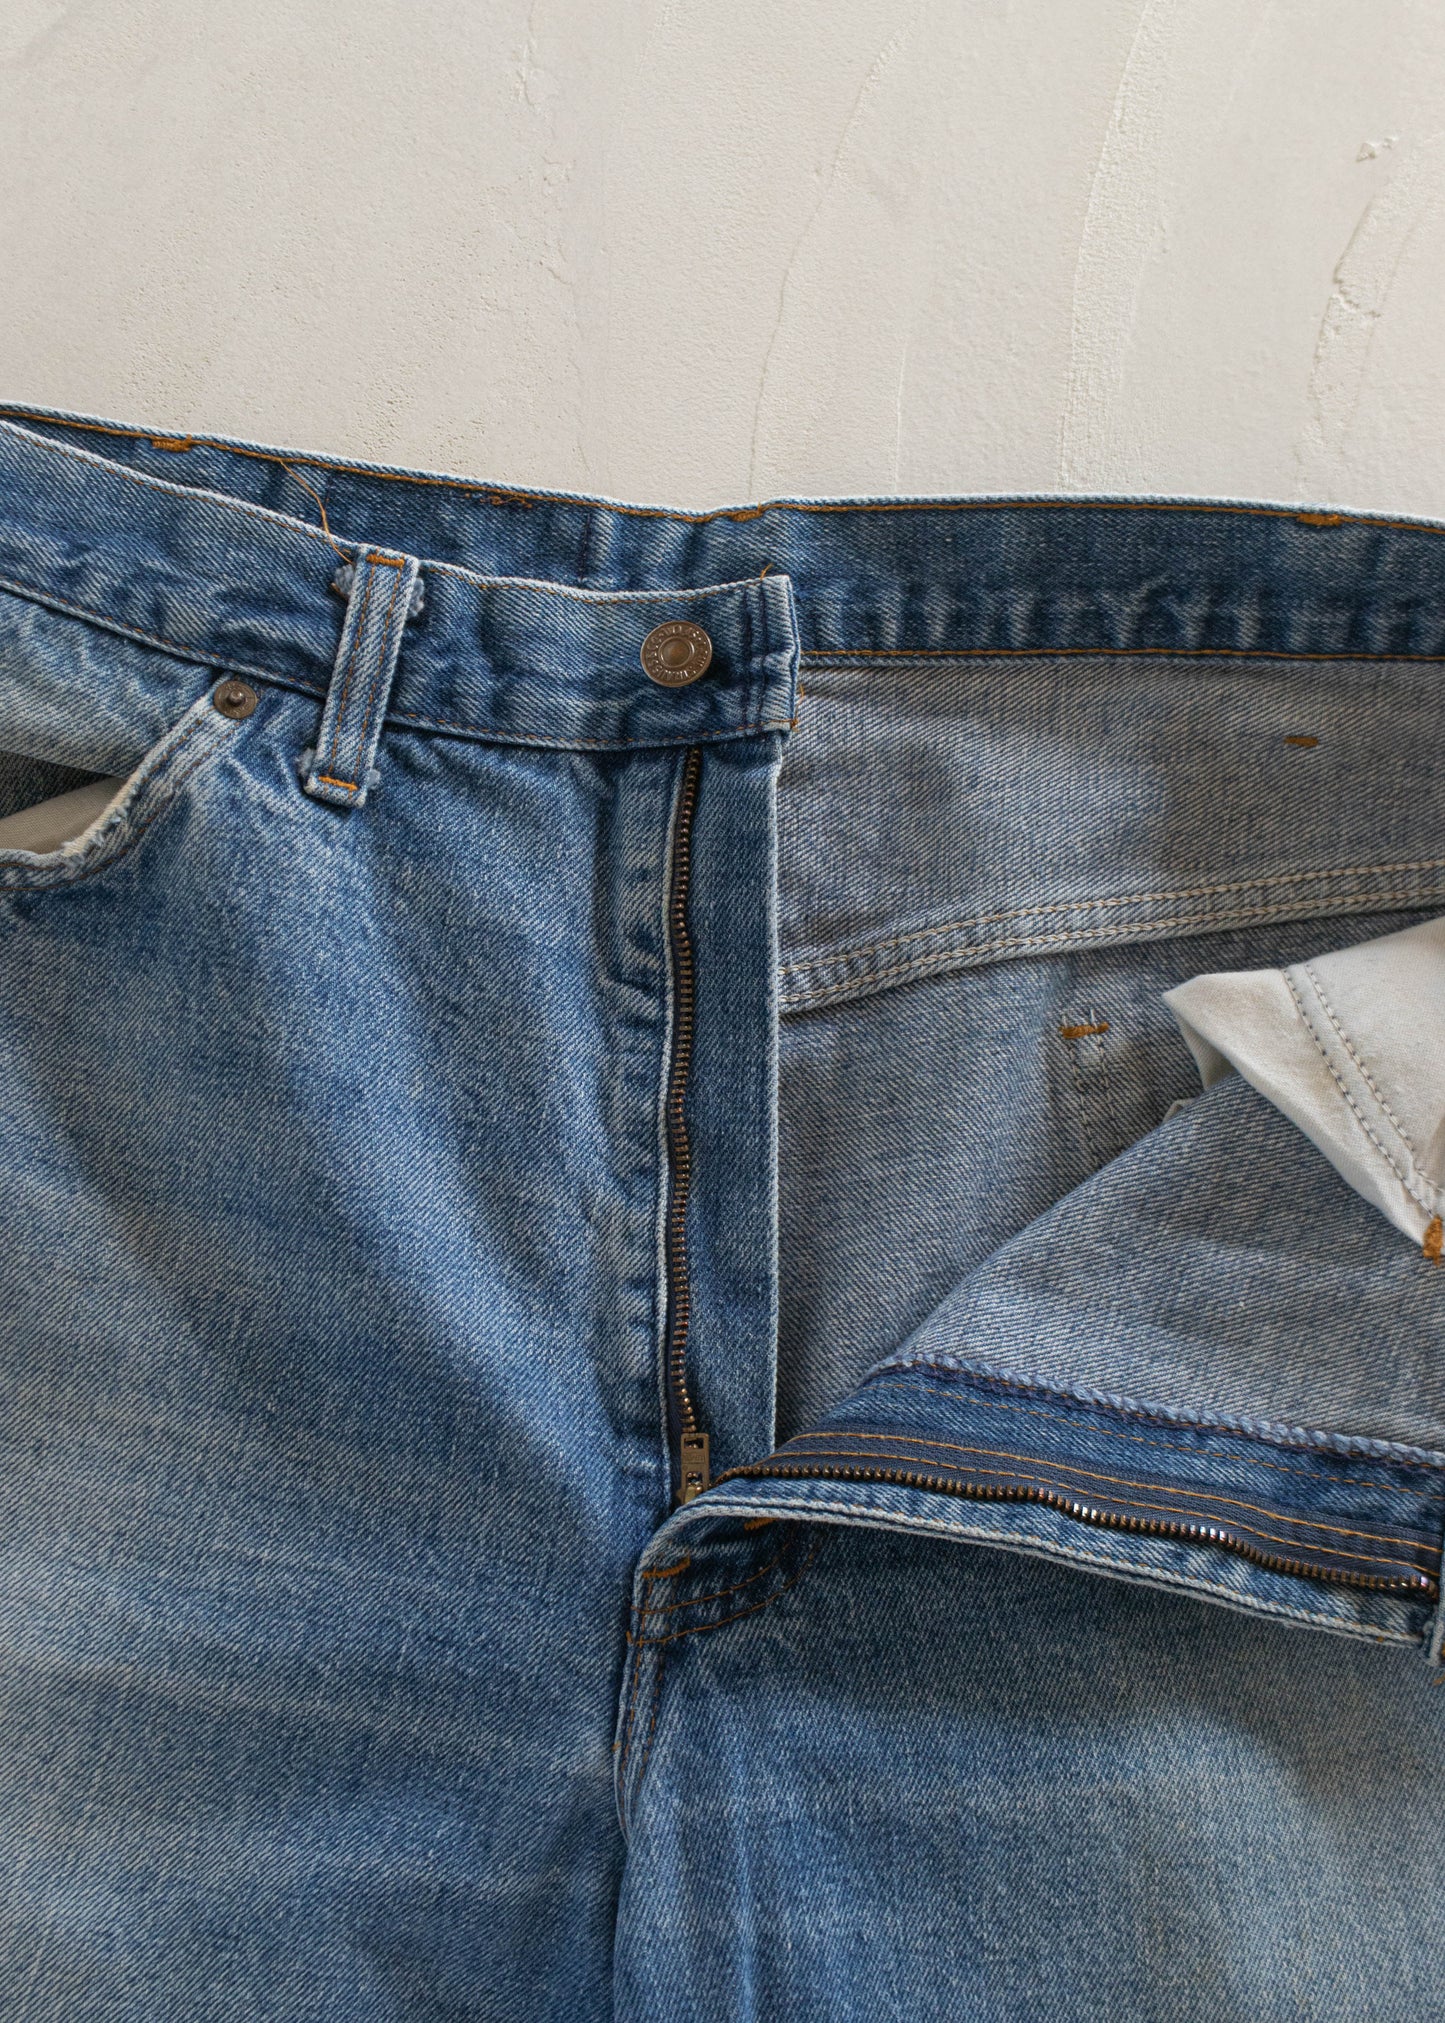 1980s Levi's Orange Tab Midwash Jeans Size Women's 32 Men's 34